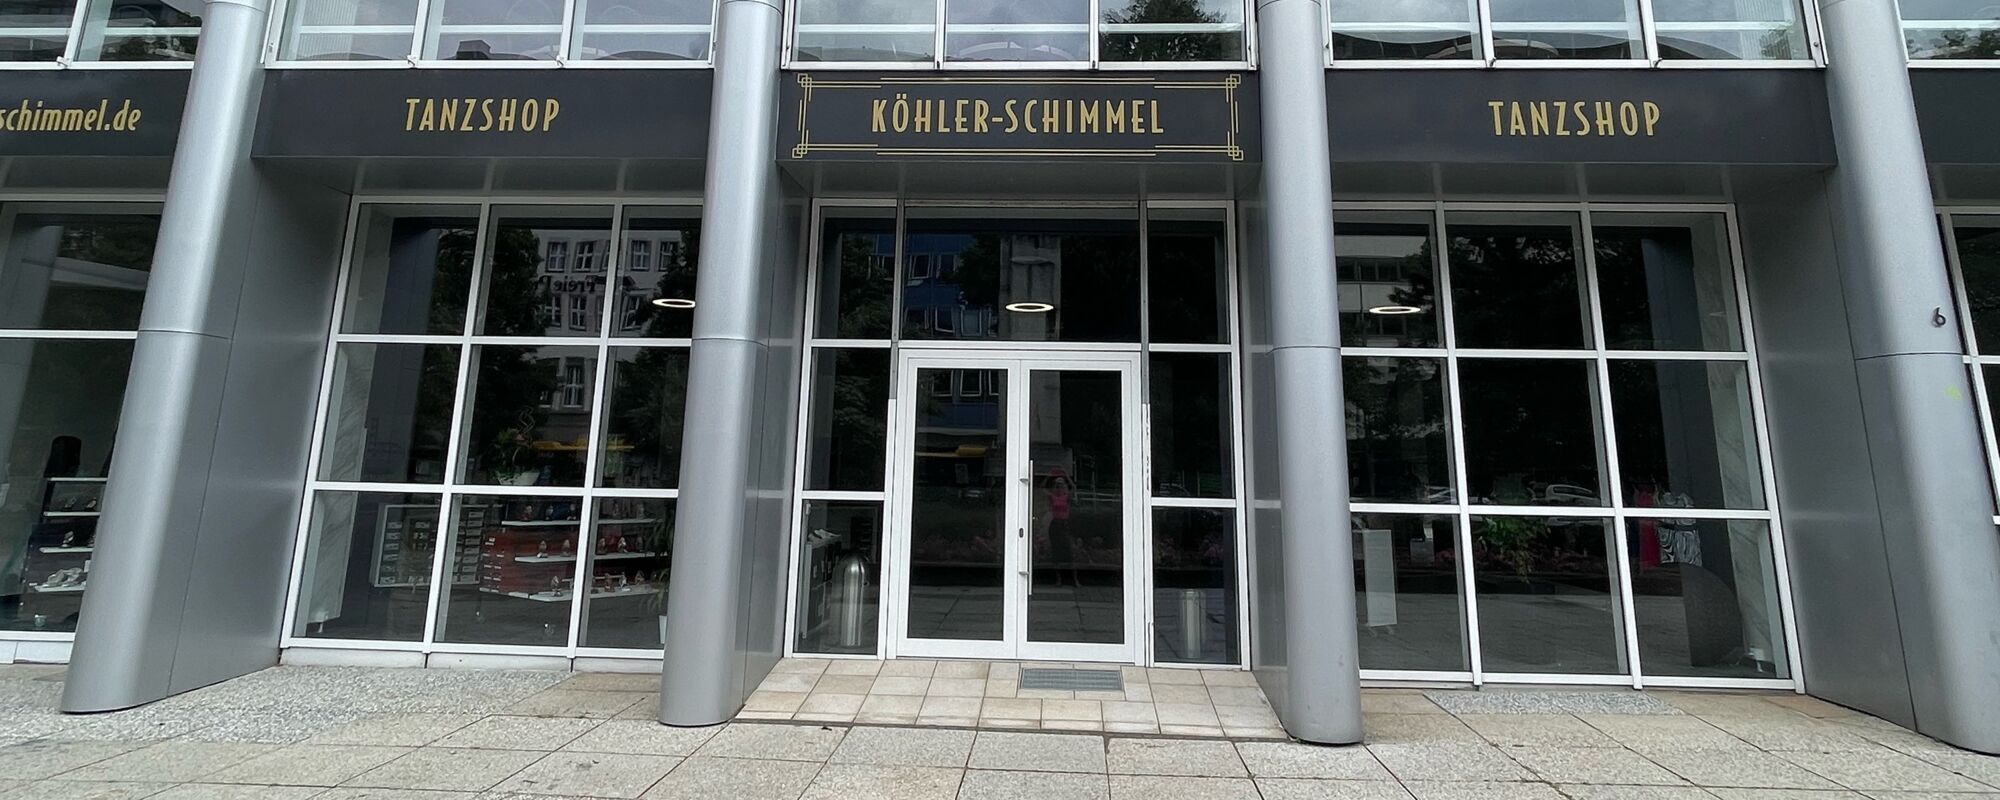 Tanzschule Köhler - Schimmel